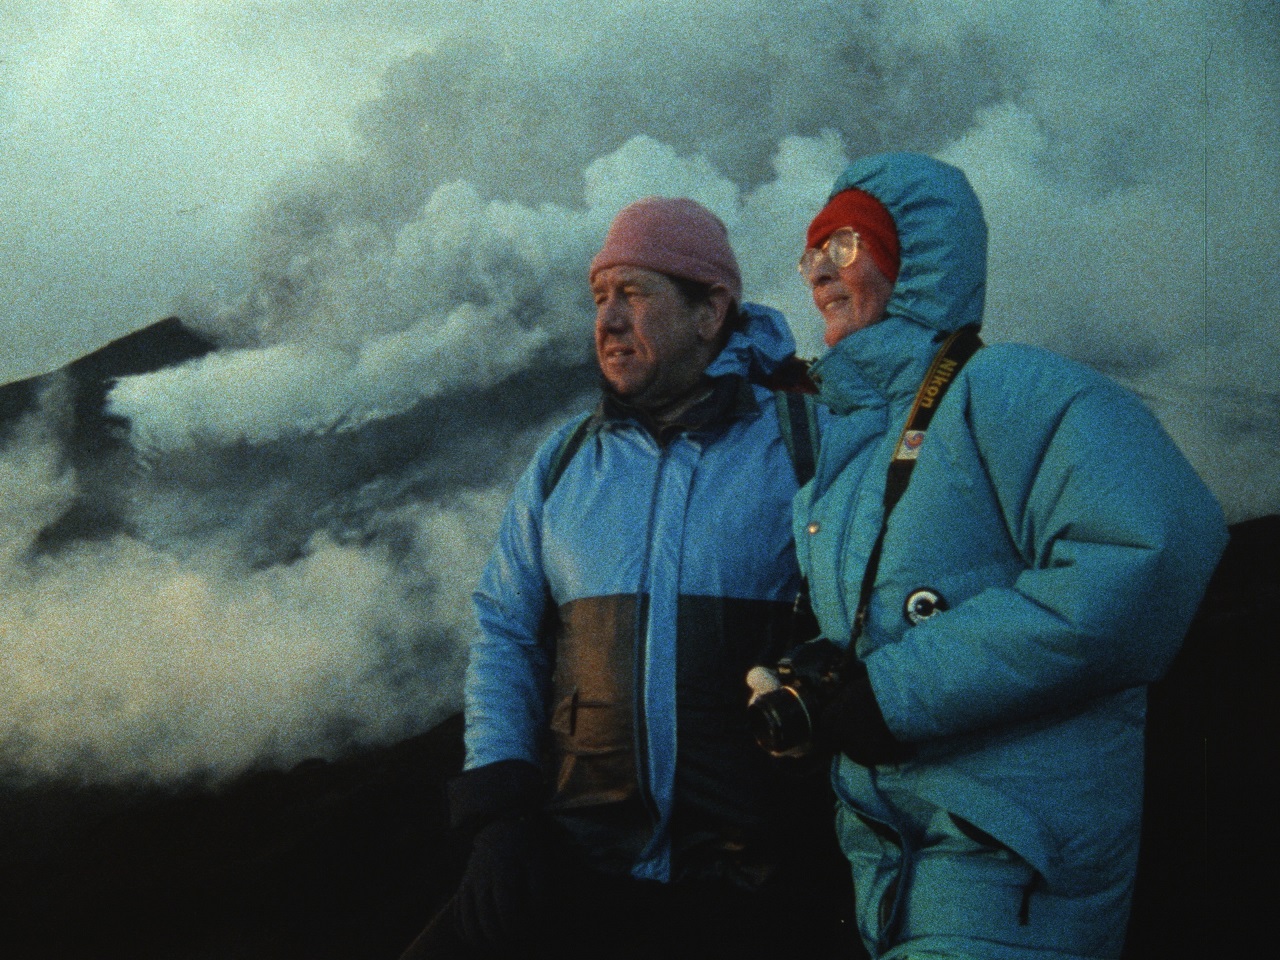 Maurice dan Katja Kraft di musim dingin berayun di gunung berapi.  Adegan dari film dokumenter "api cinta".